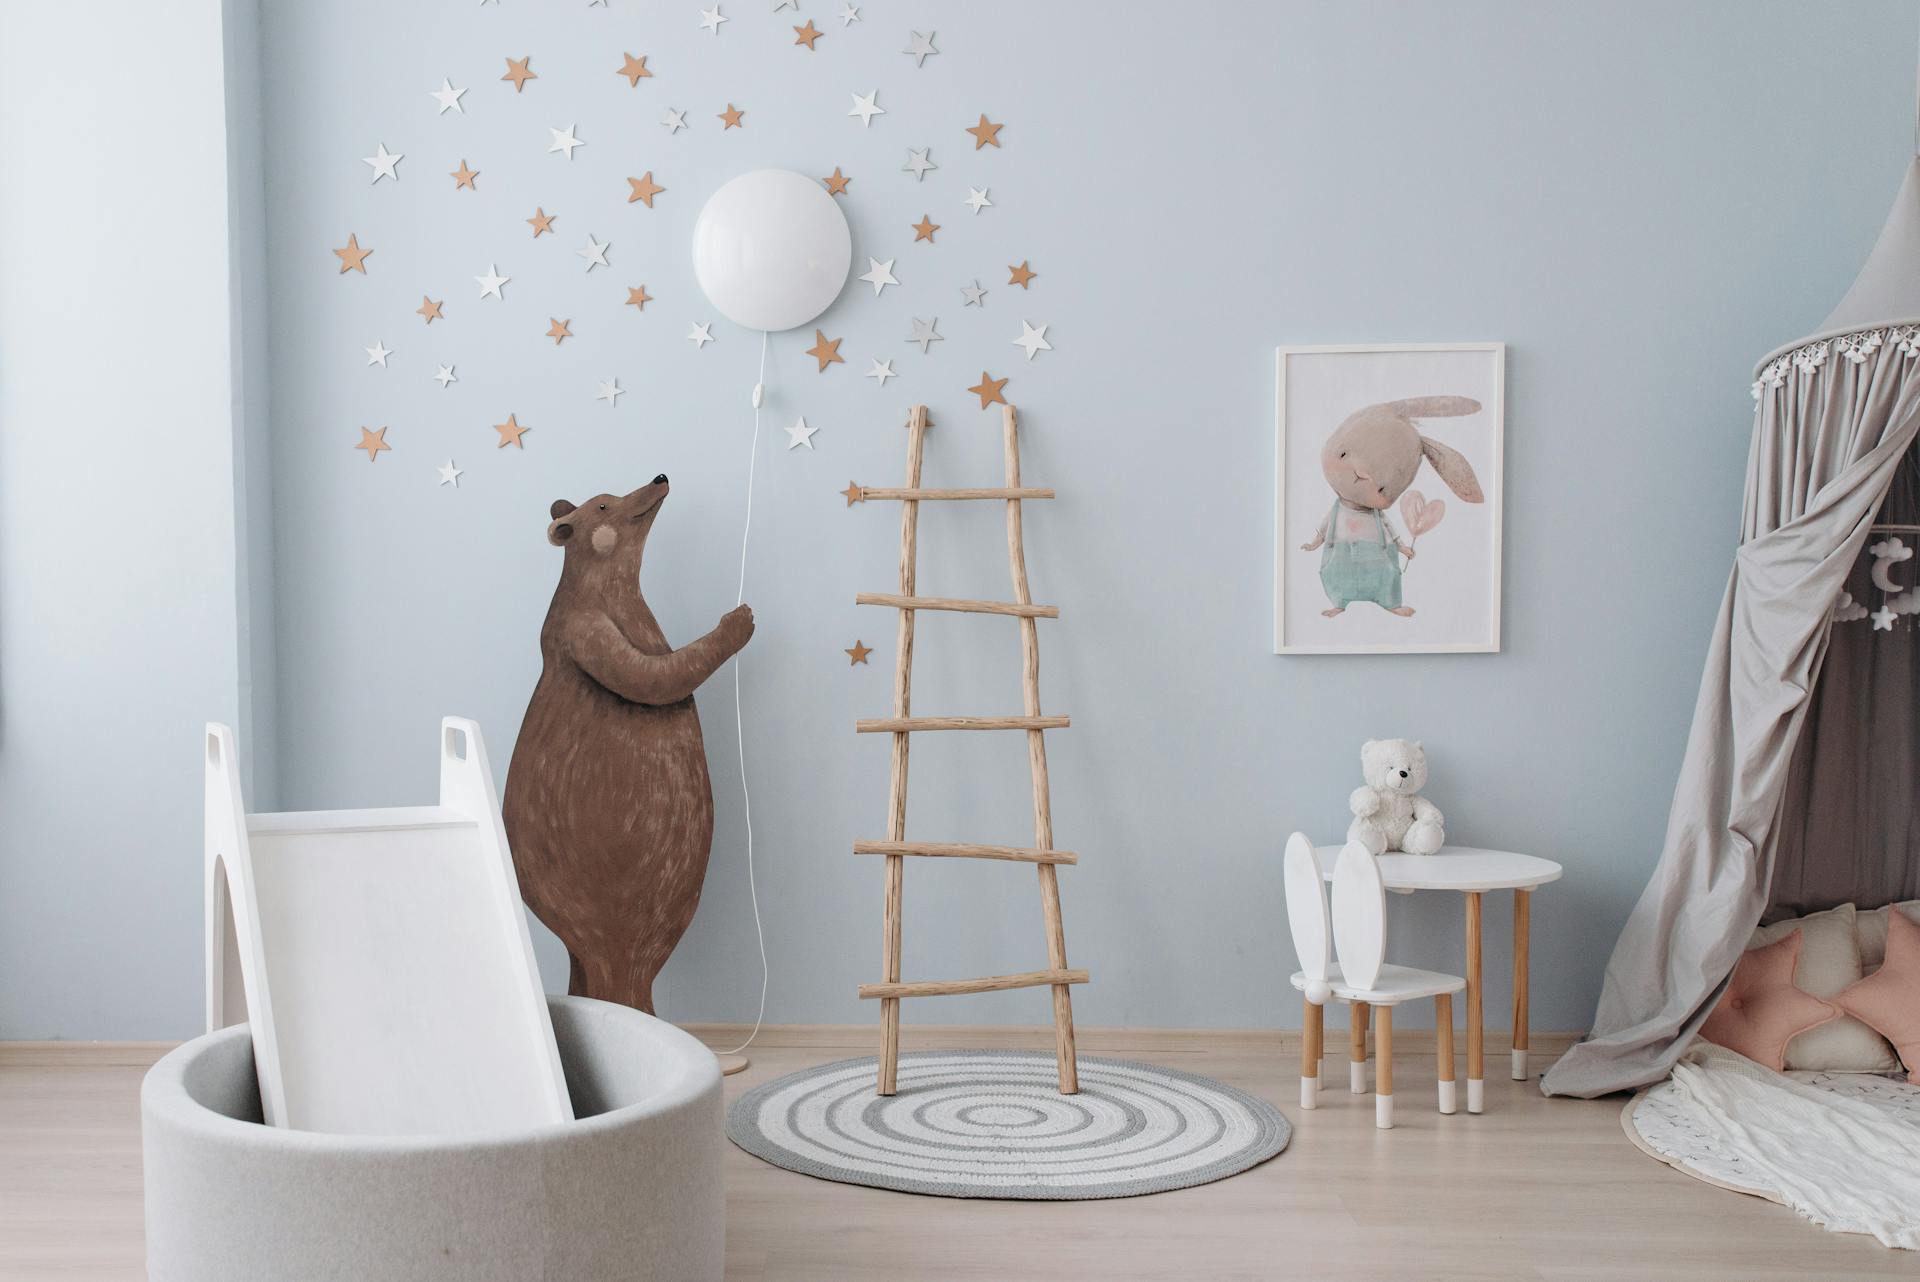 Une chambre d'enfant avec des décorations | Source : Pexels